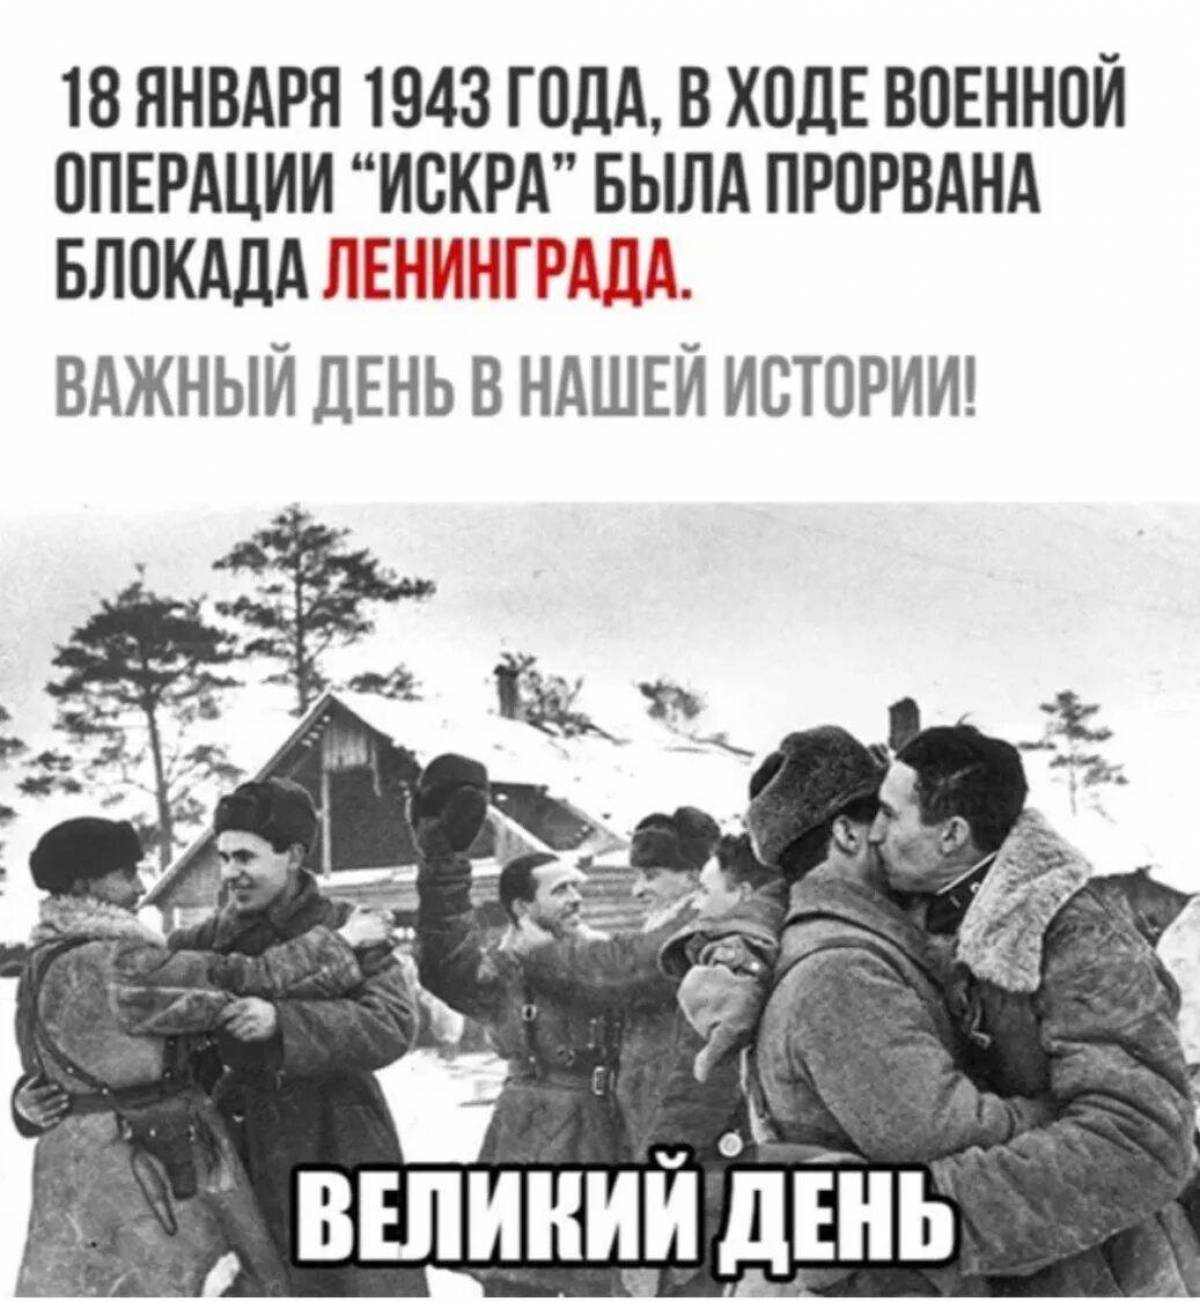 Прорыв блокады ленинграда #9